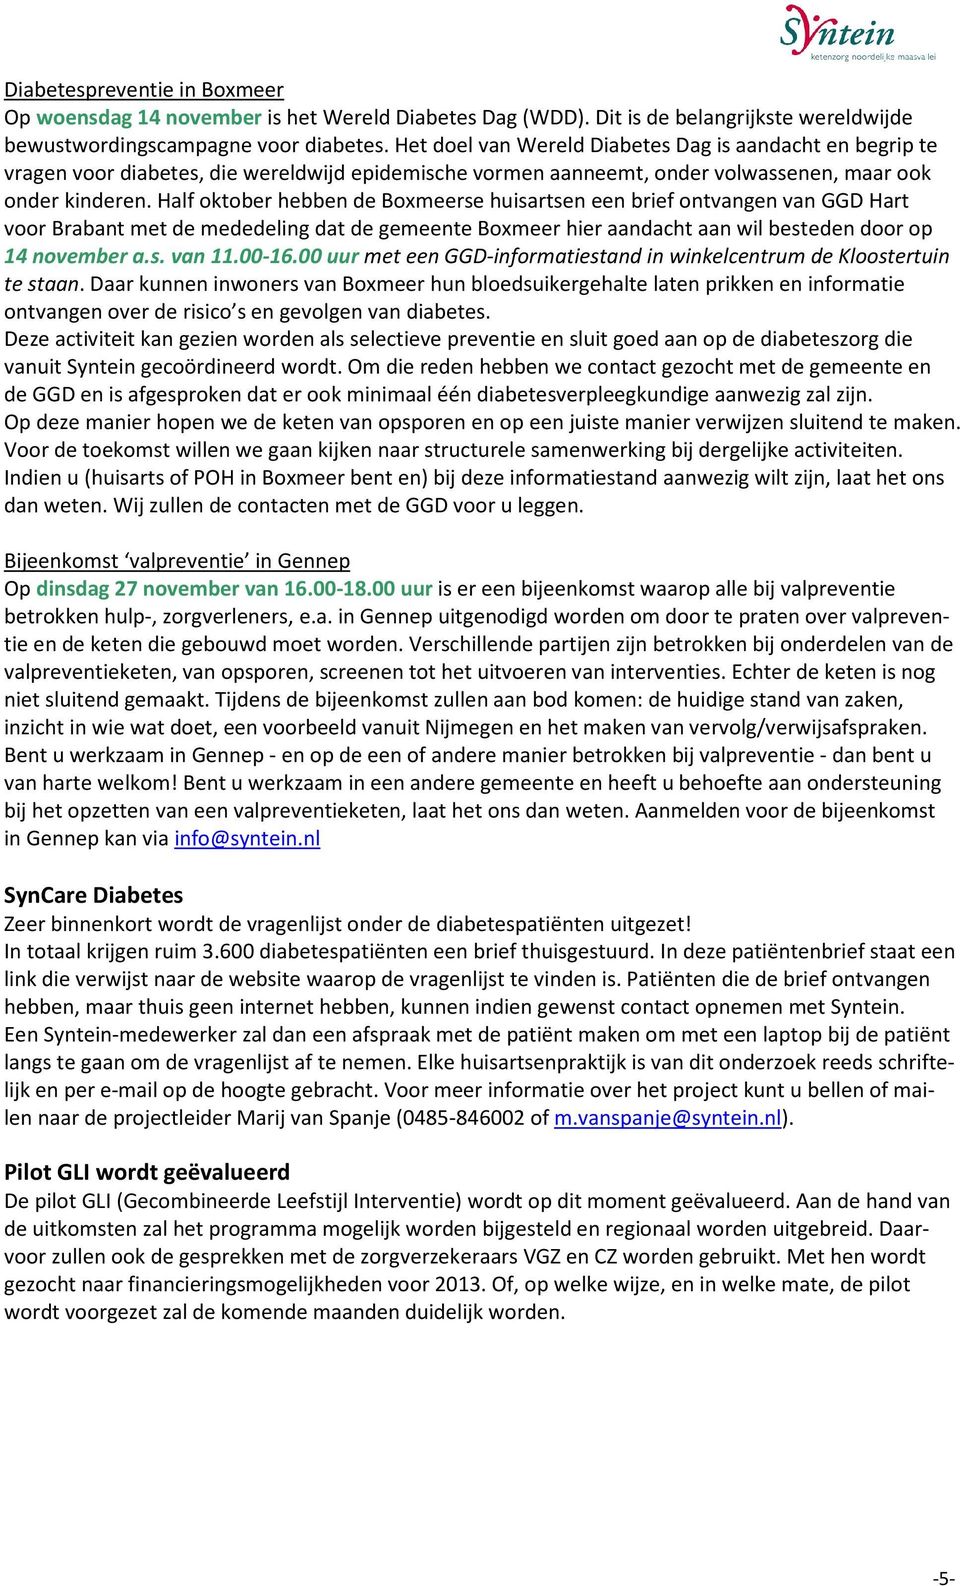 Half oktober hebben de Boxmeerse huisartsen een brief ontvangen van GGD Hart voor Brabant met de mededeling dat de gemeente Boxmeer hier aandacht aan wil besteden door op 14 november a.s. van 11.